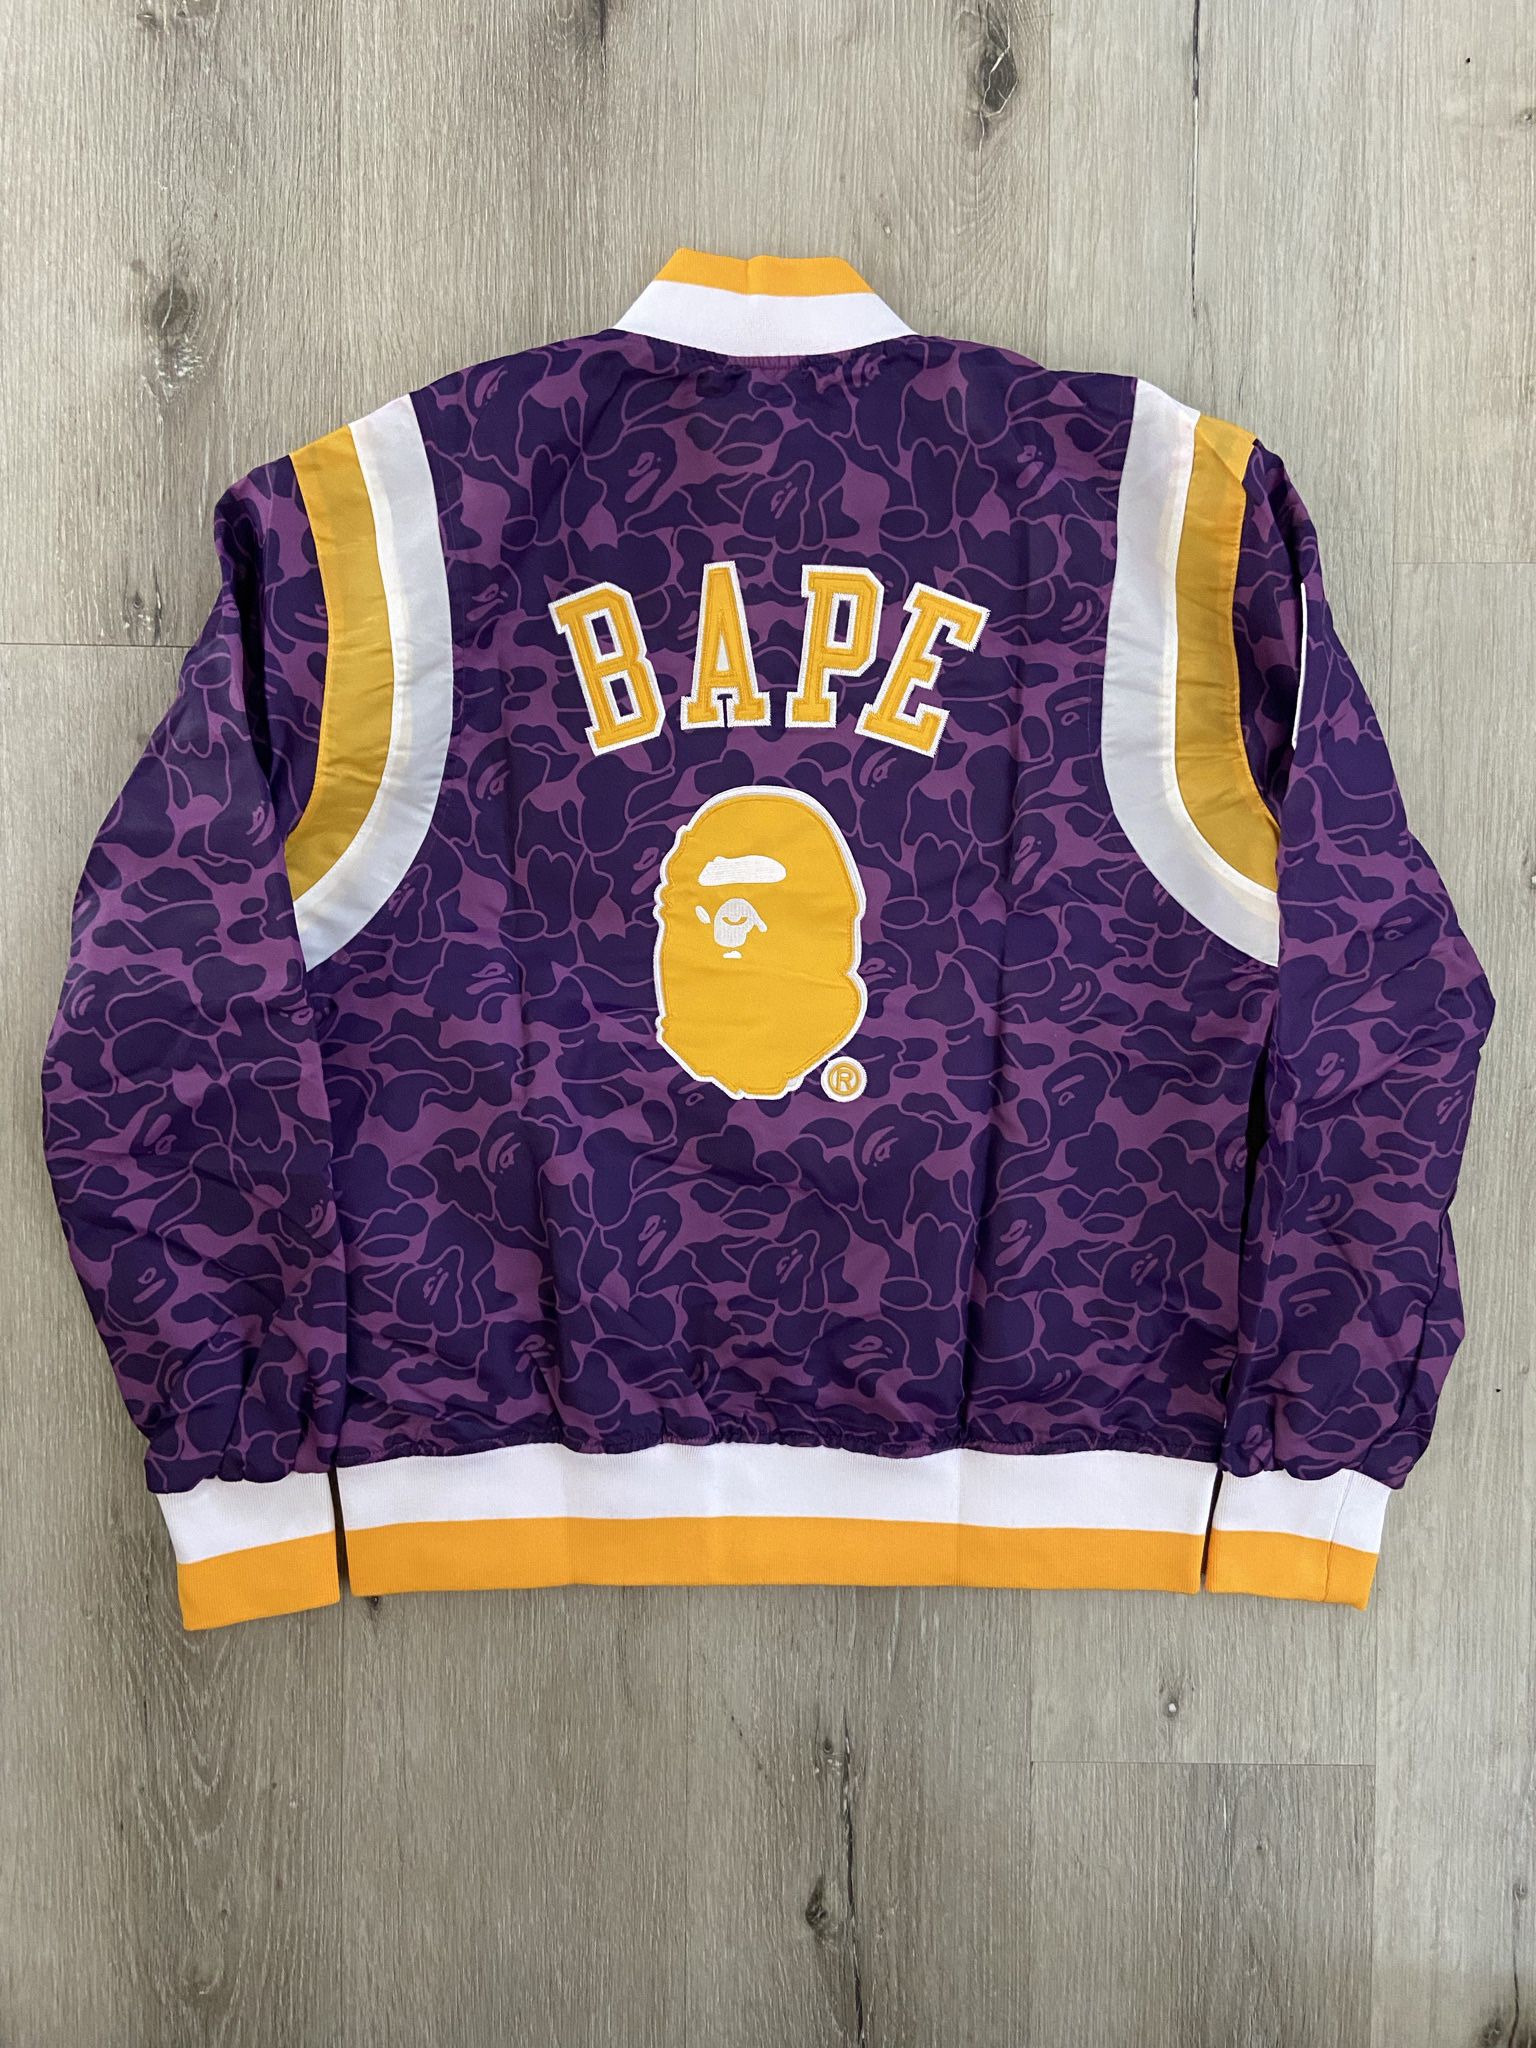 Lakers camo jacket BAPE #NBA #LAKERS #BAPE #HIPHOP #LA - Depop